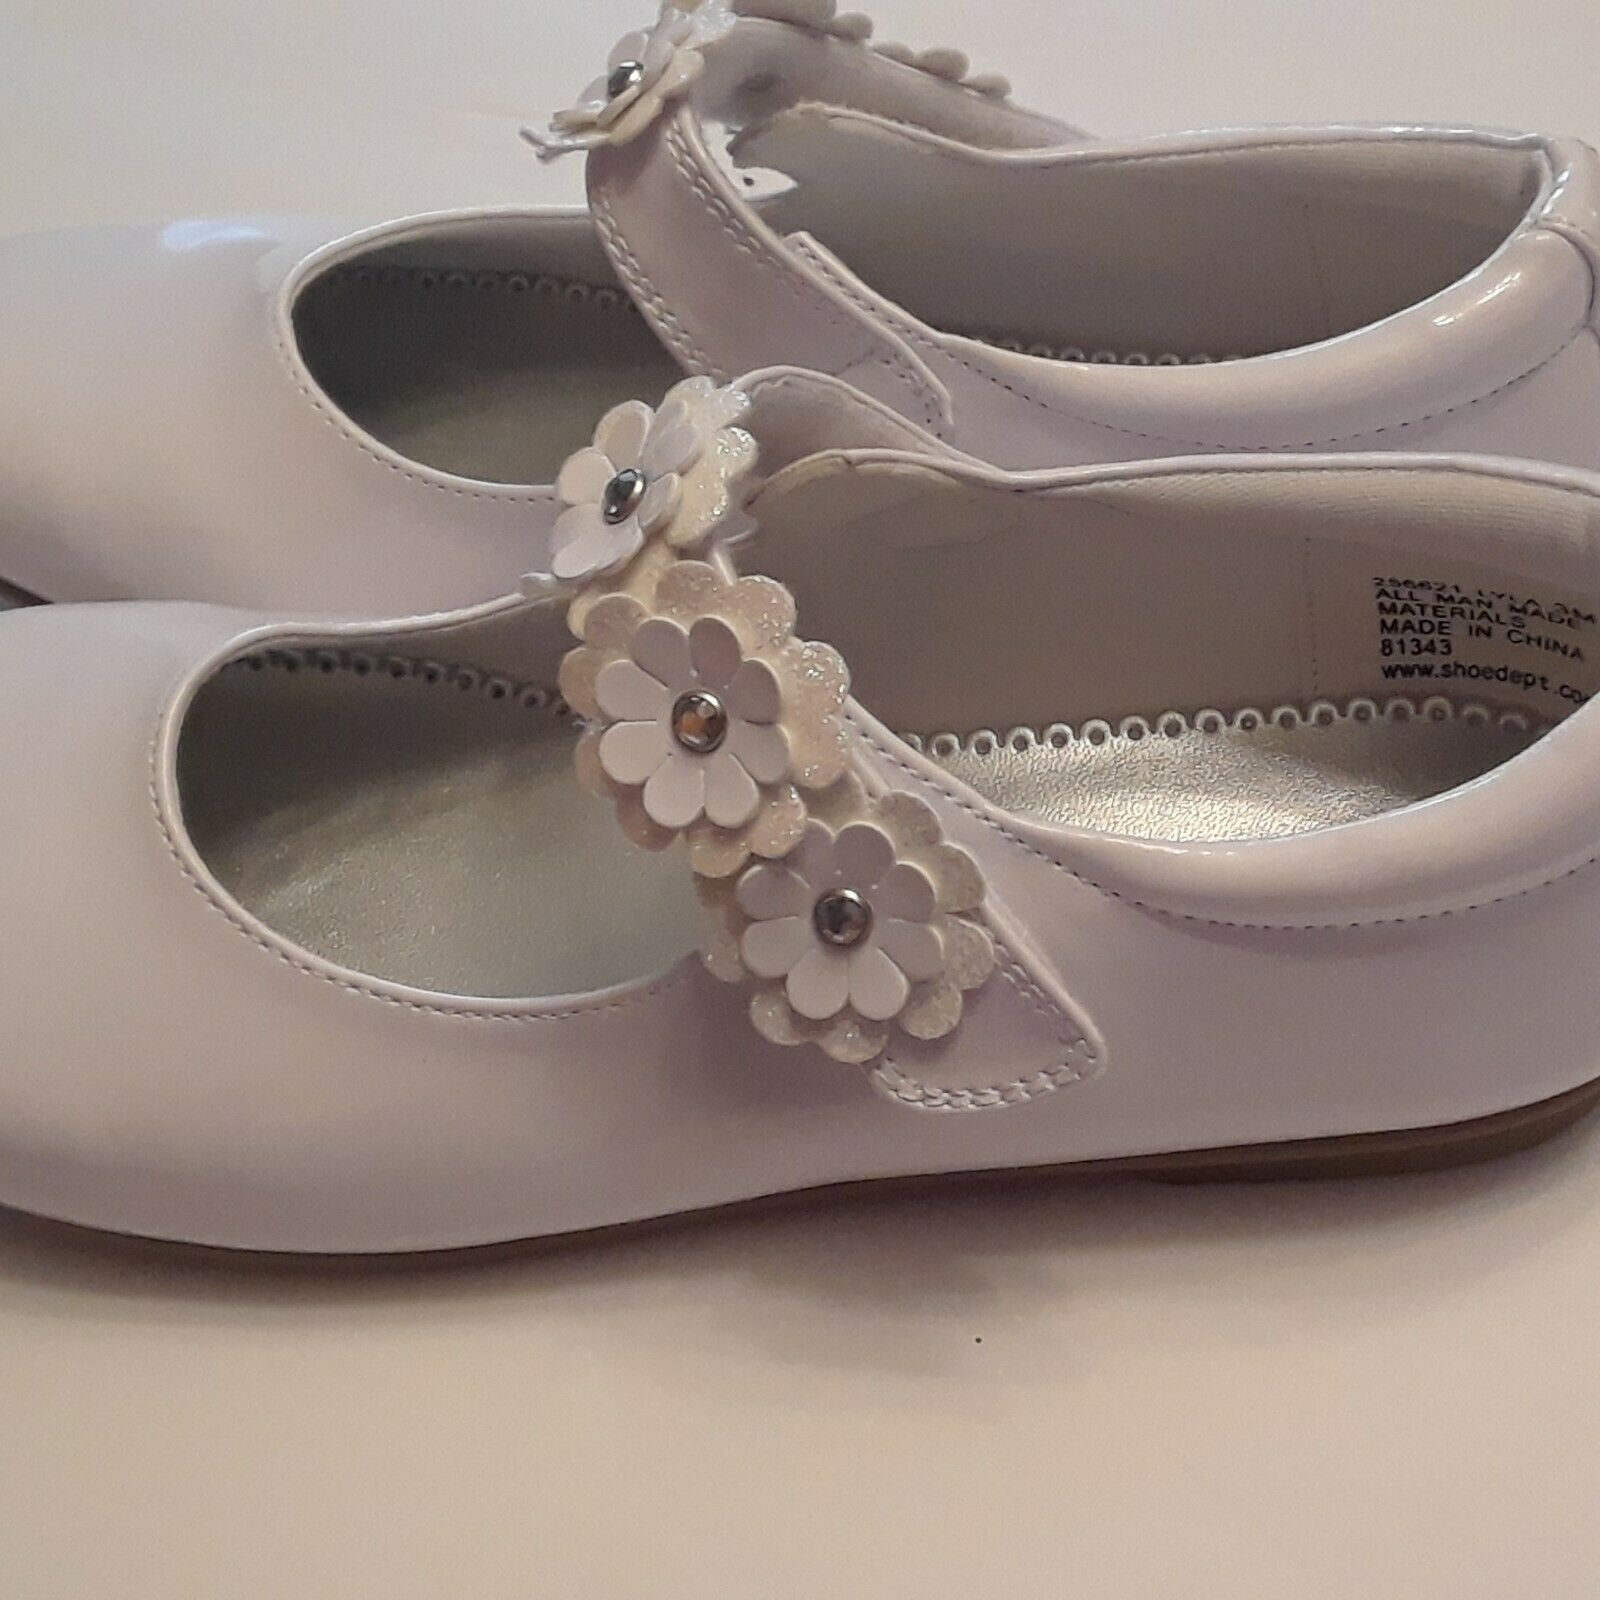 Rachel Shoes Girl's Dress Shoes - Very White - Size 3M Stock#256621/Lyla NIB